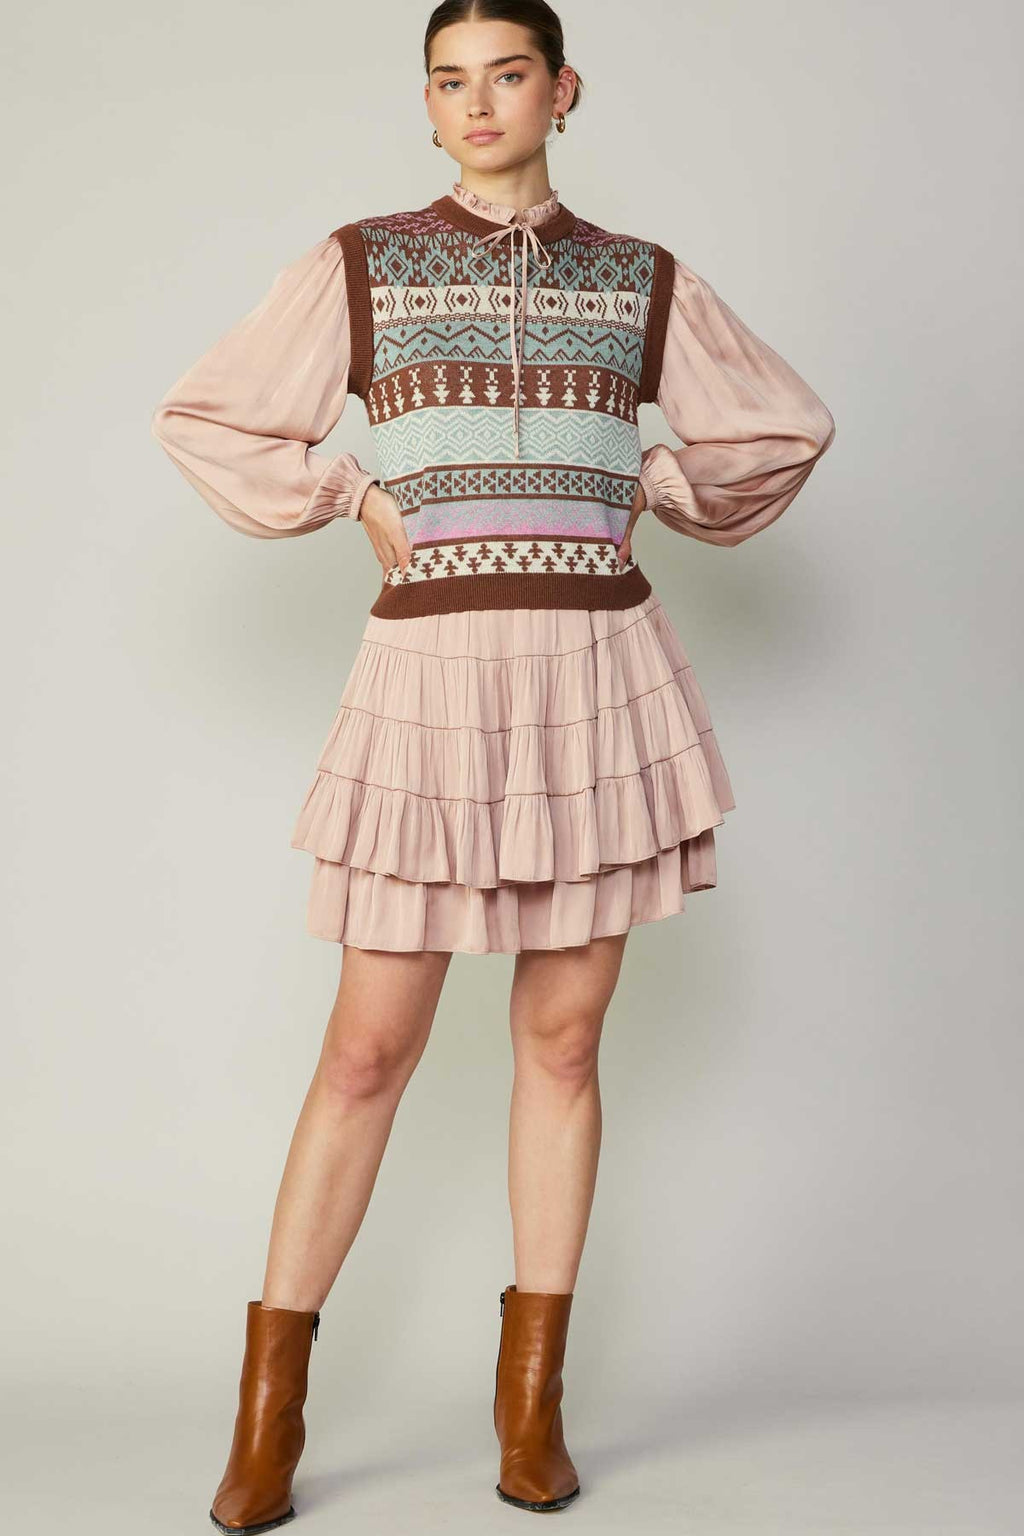 Tiered Mini Skirt- Faded Blush